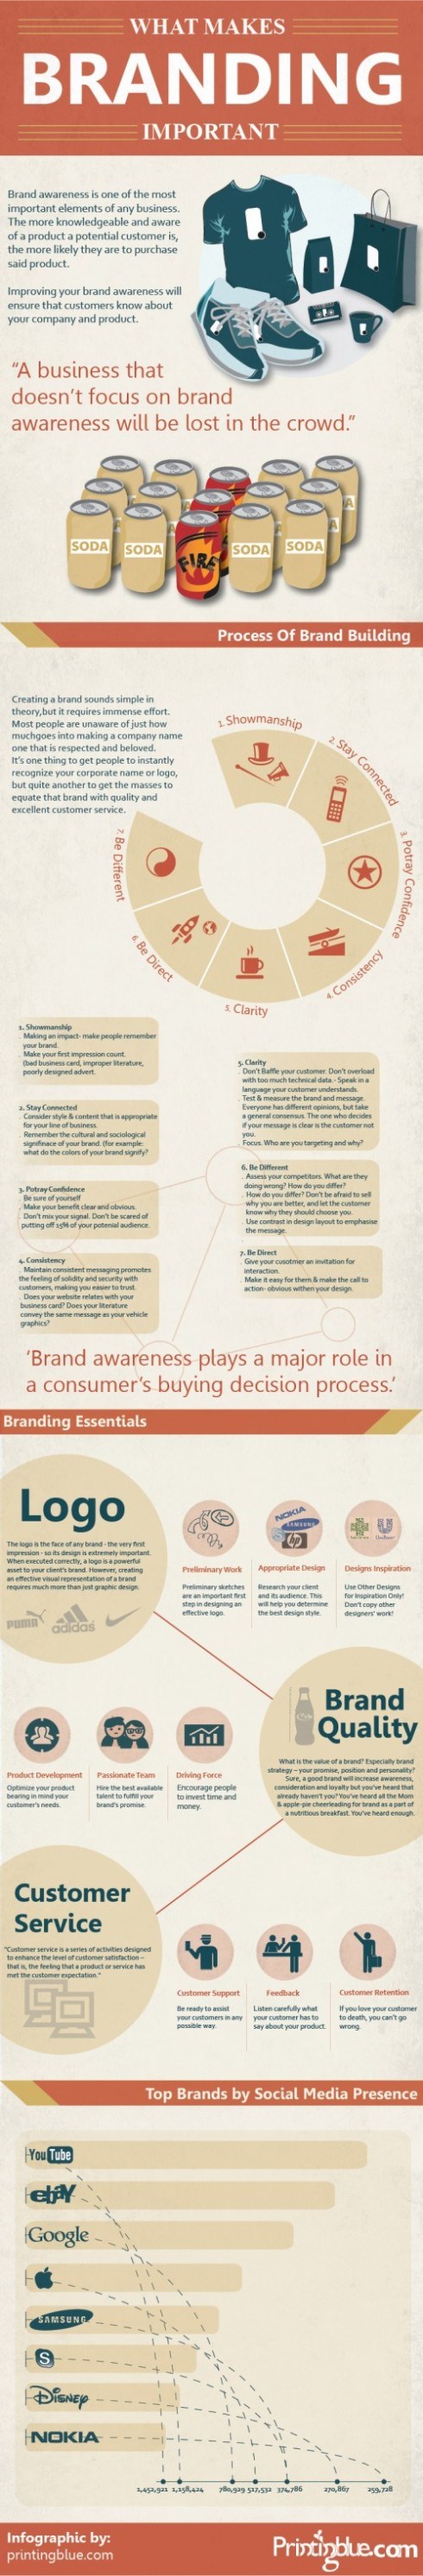 ¿Qué hace al Branding importante? 